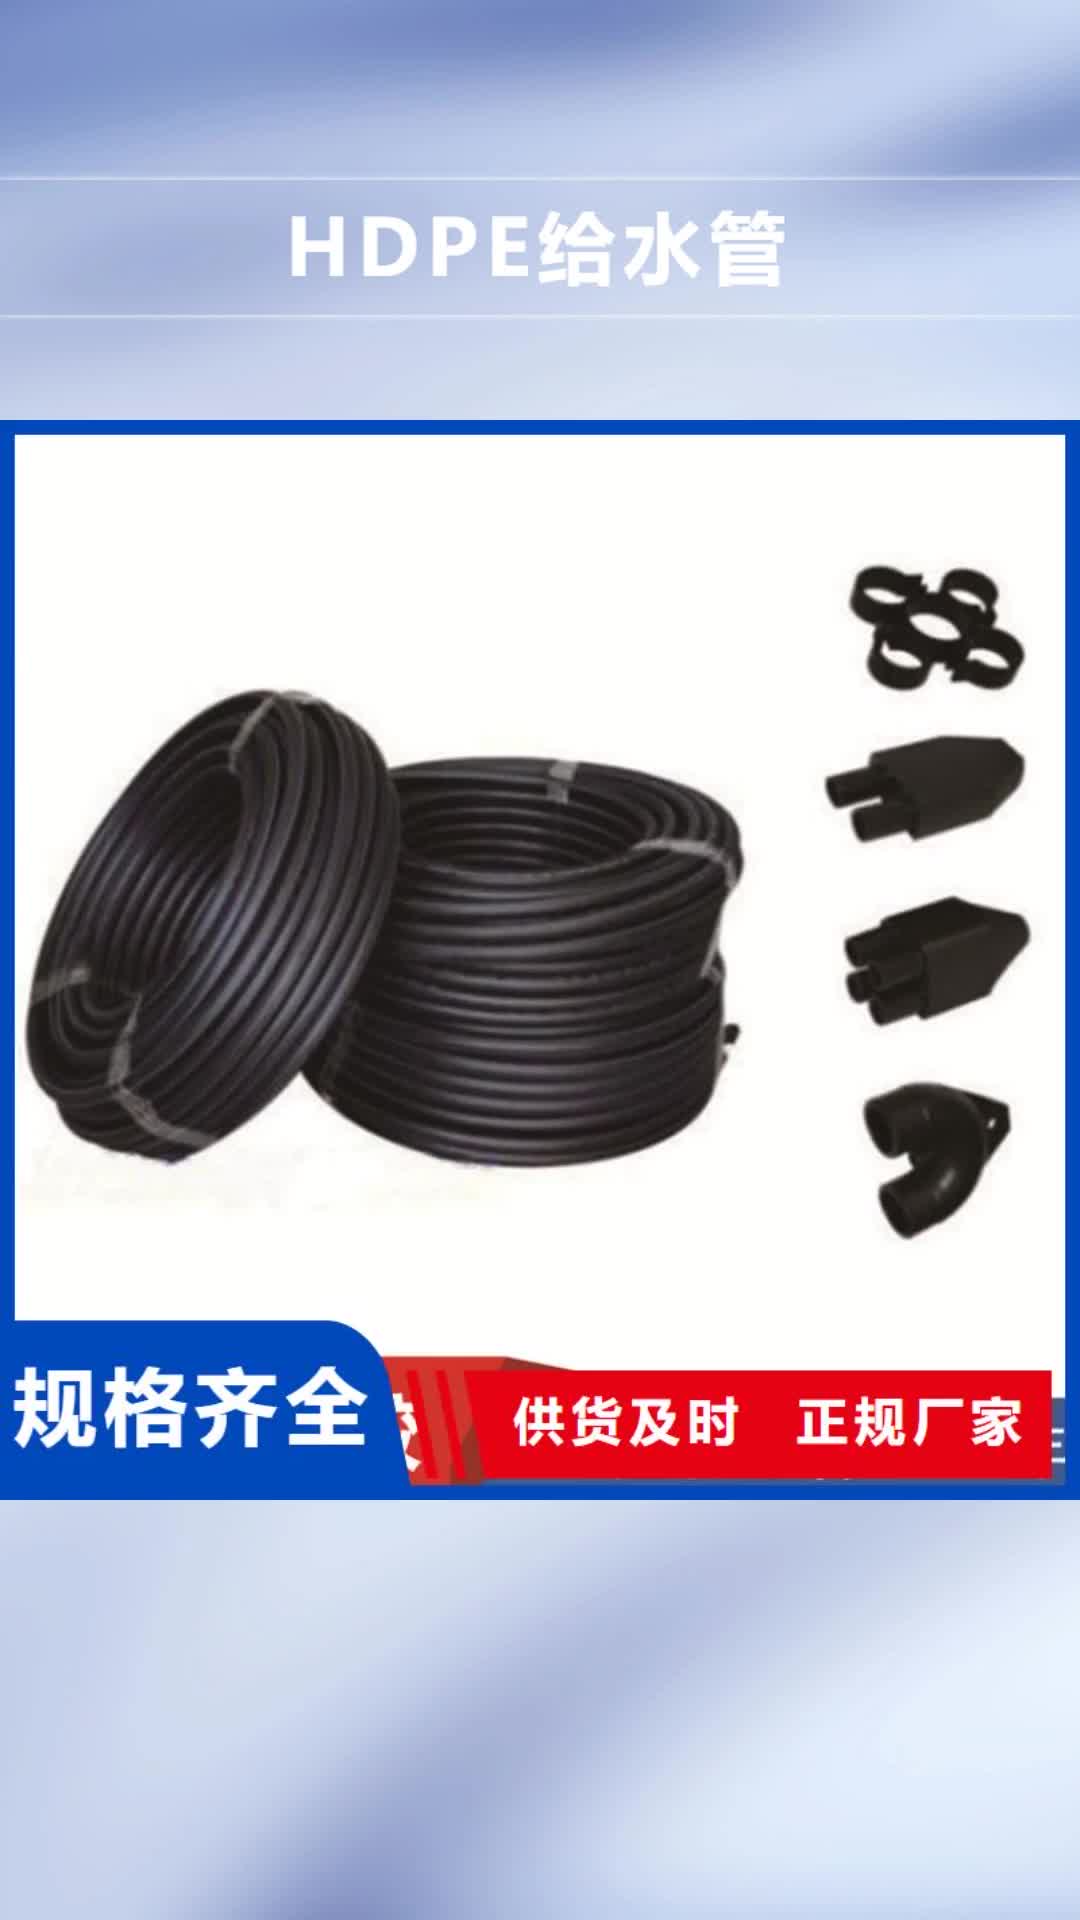 襄阳 HDPE给水管【七孔集束管】好产品价格低